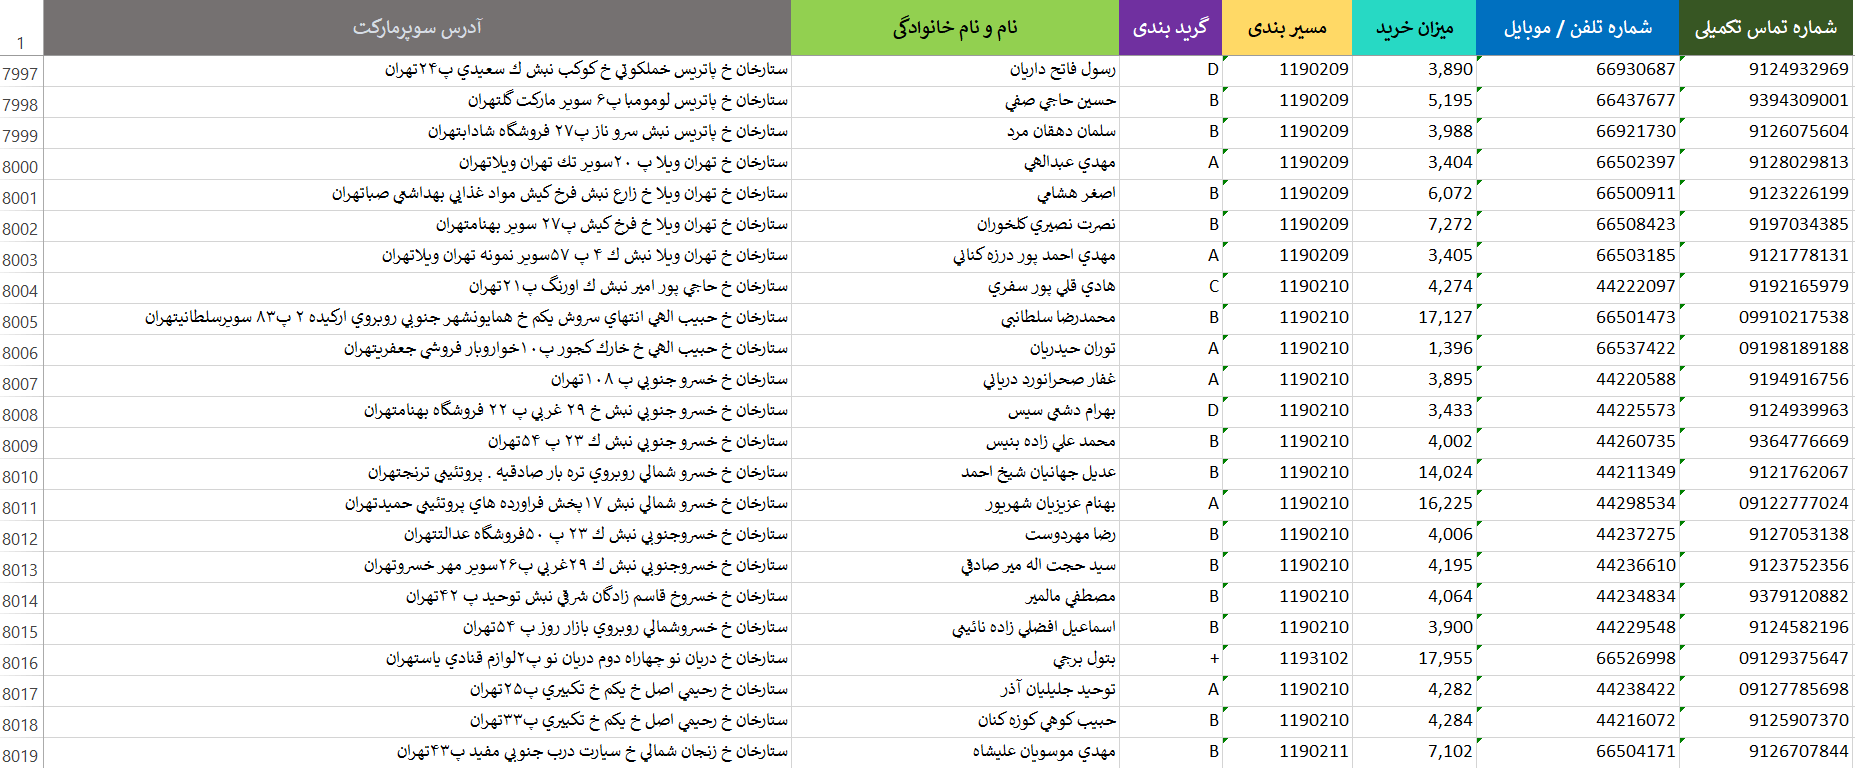 لیست شماره سوپر مارکت تهران